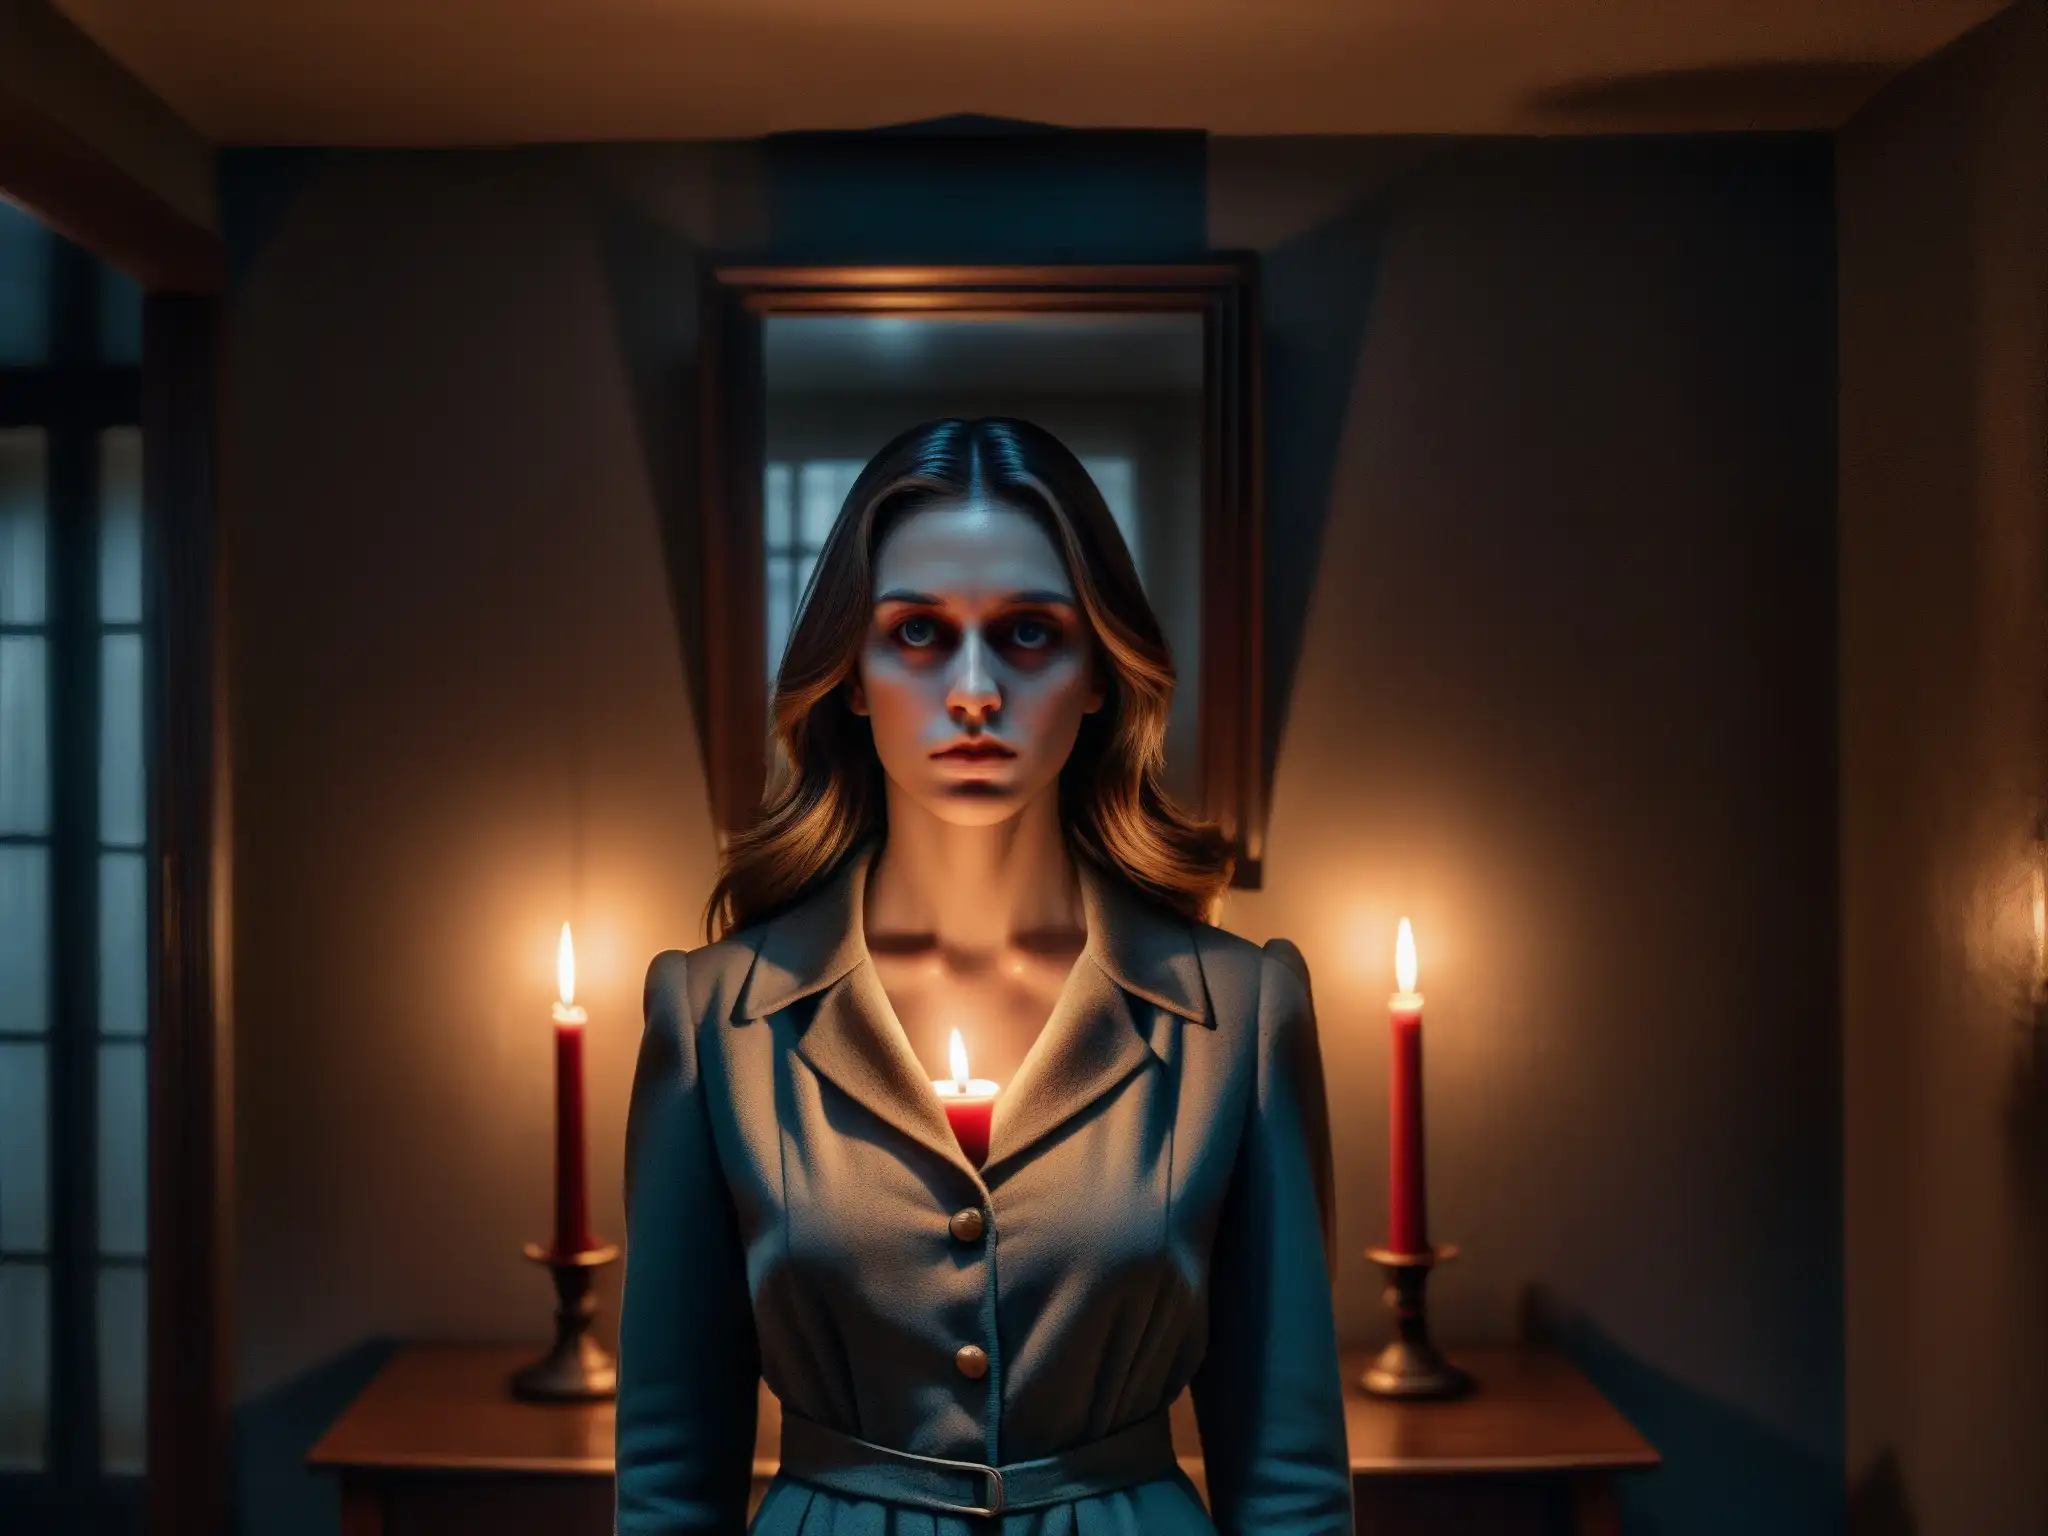 En una habitación oscura iluminada por velas, un espejo refleja la imagen distorsionada de una mujer con ojos inyectados en sangre